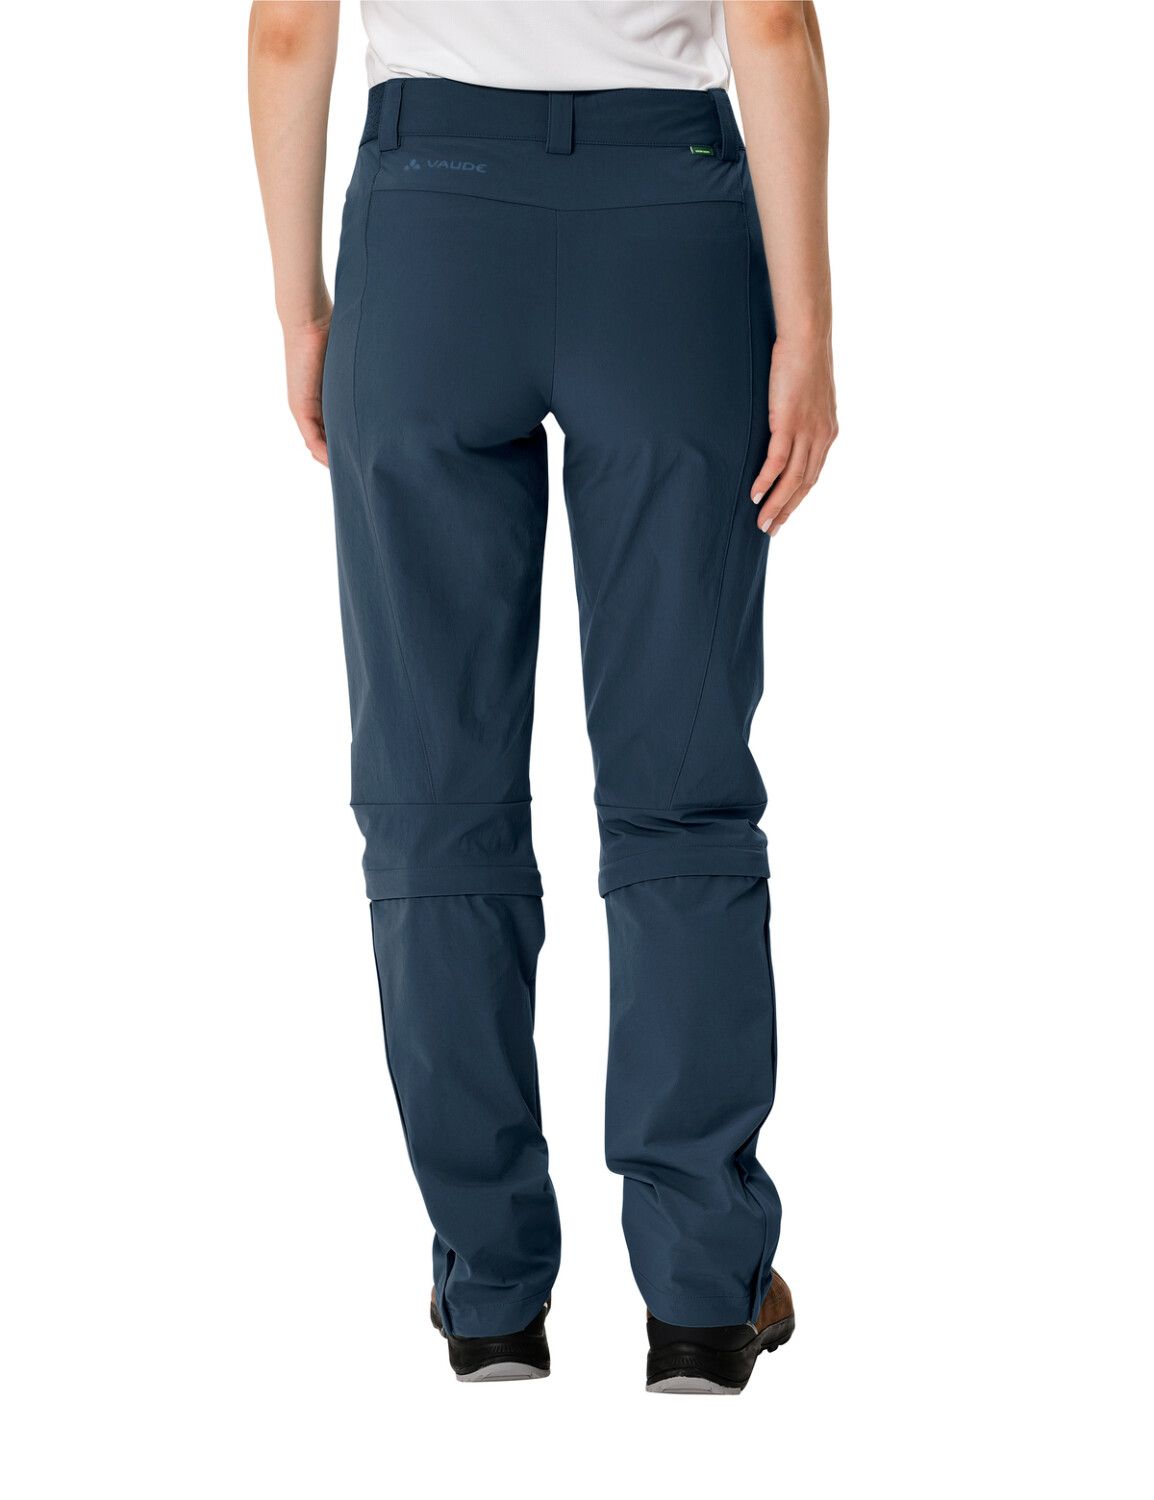 VAUDE Women's Farley Stretch Capri T-Zip Pants III (Bild 27)